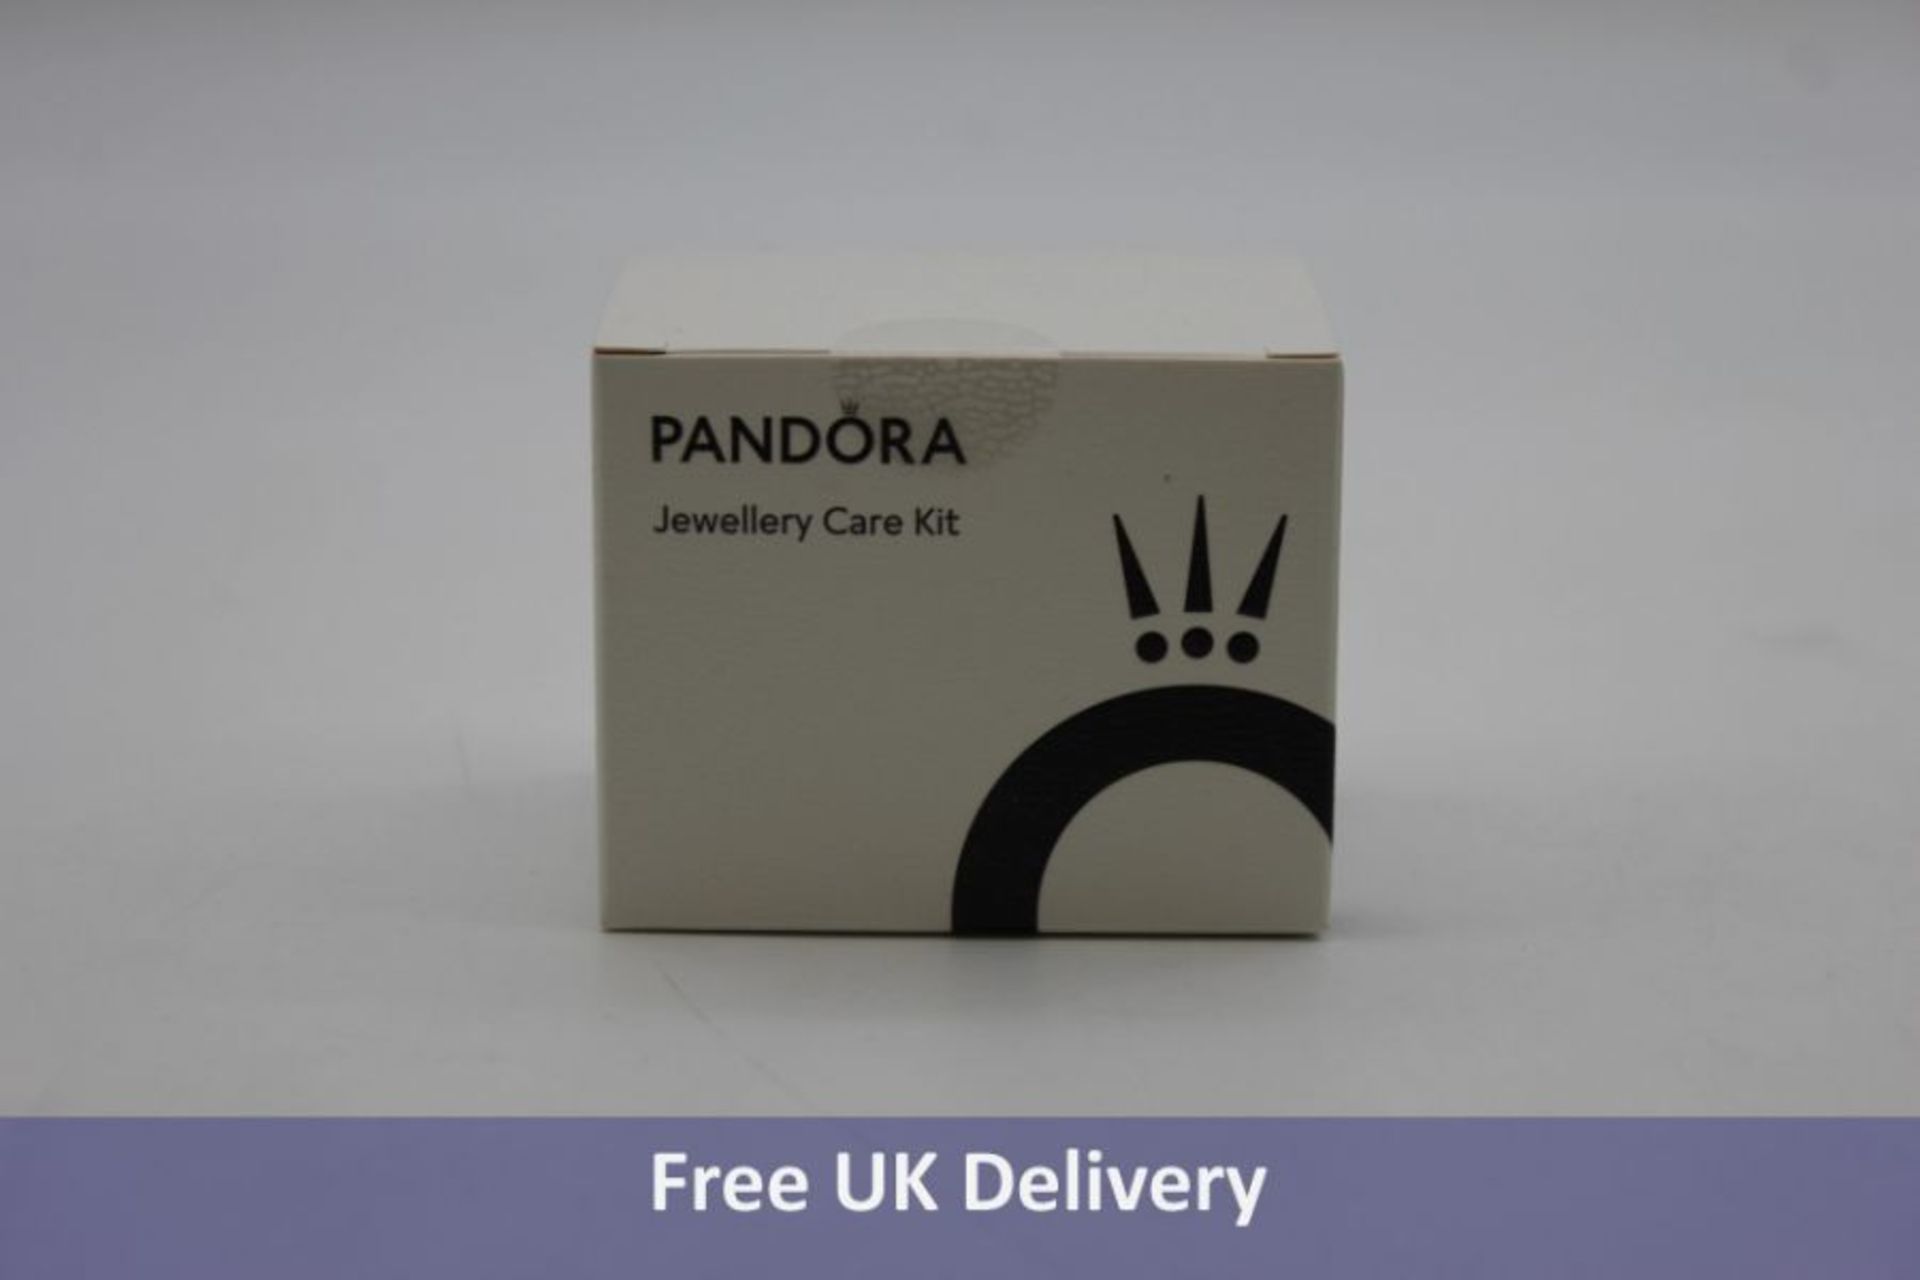 Twelve Pandora Jewellery Care Kits